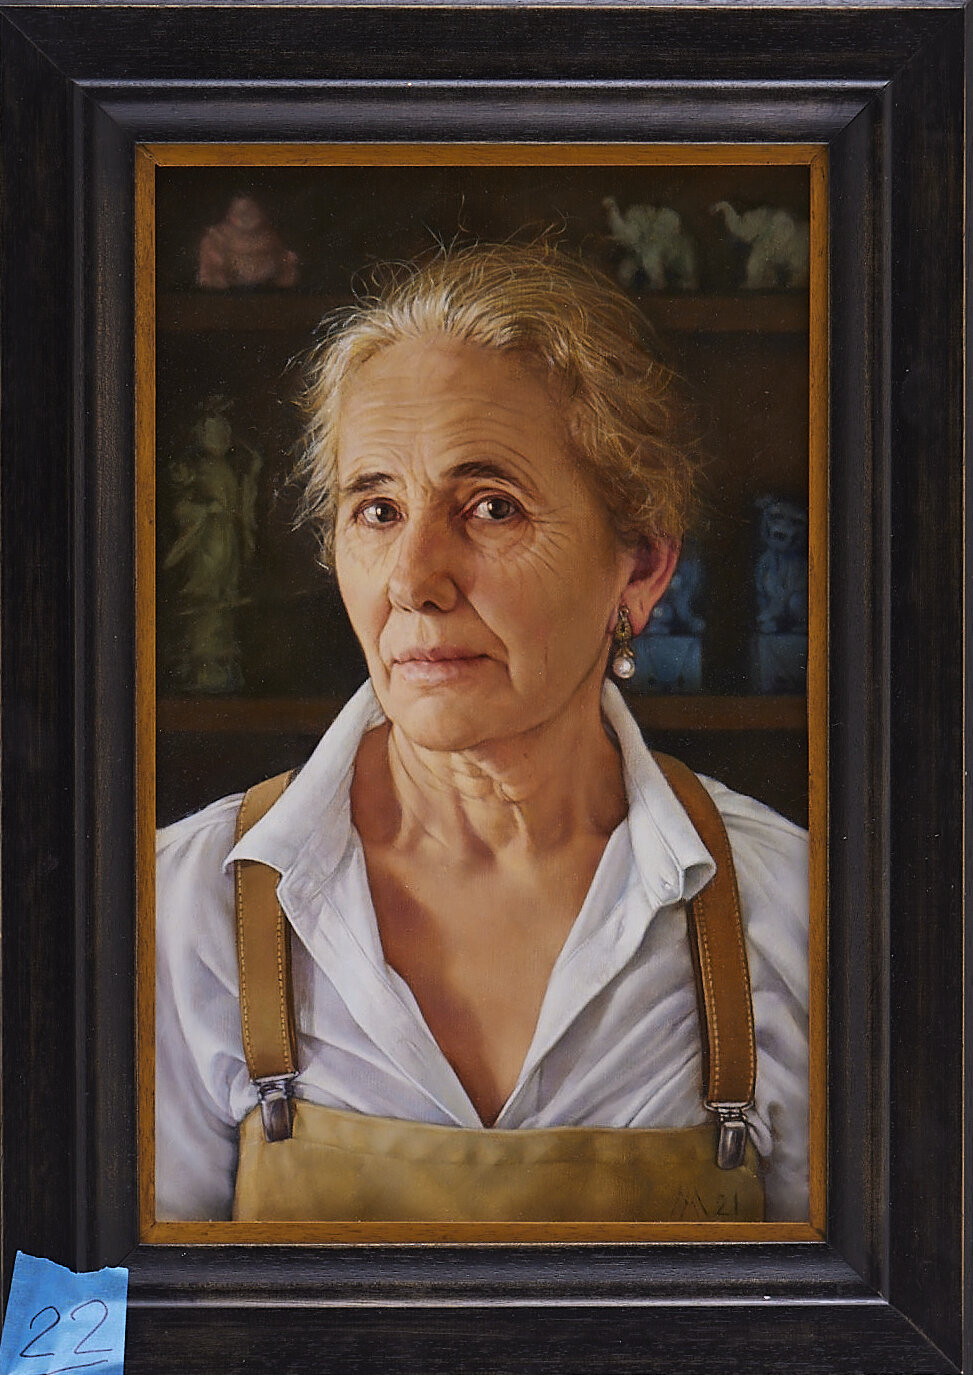 Bức tranh “A Self-Portrait with Pearl Earrings” (Bức chân dung tự họa với đôi bông tai ngọc trai) của họa sĩ Alessandra Marrucchi. (Ảnh: Cuộc thi Vẽ tranh Nhân vật Quốc tế của Đài truyền hình Tân Đường Nhân)